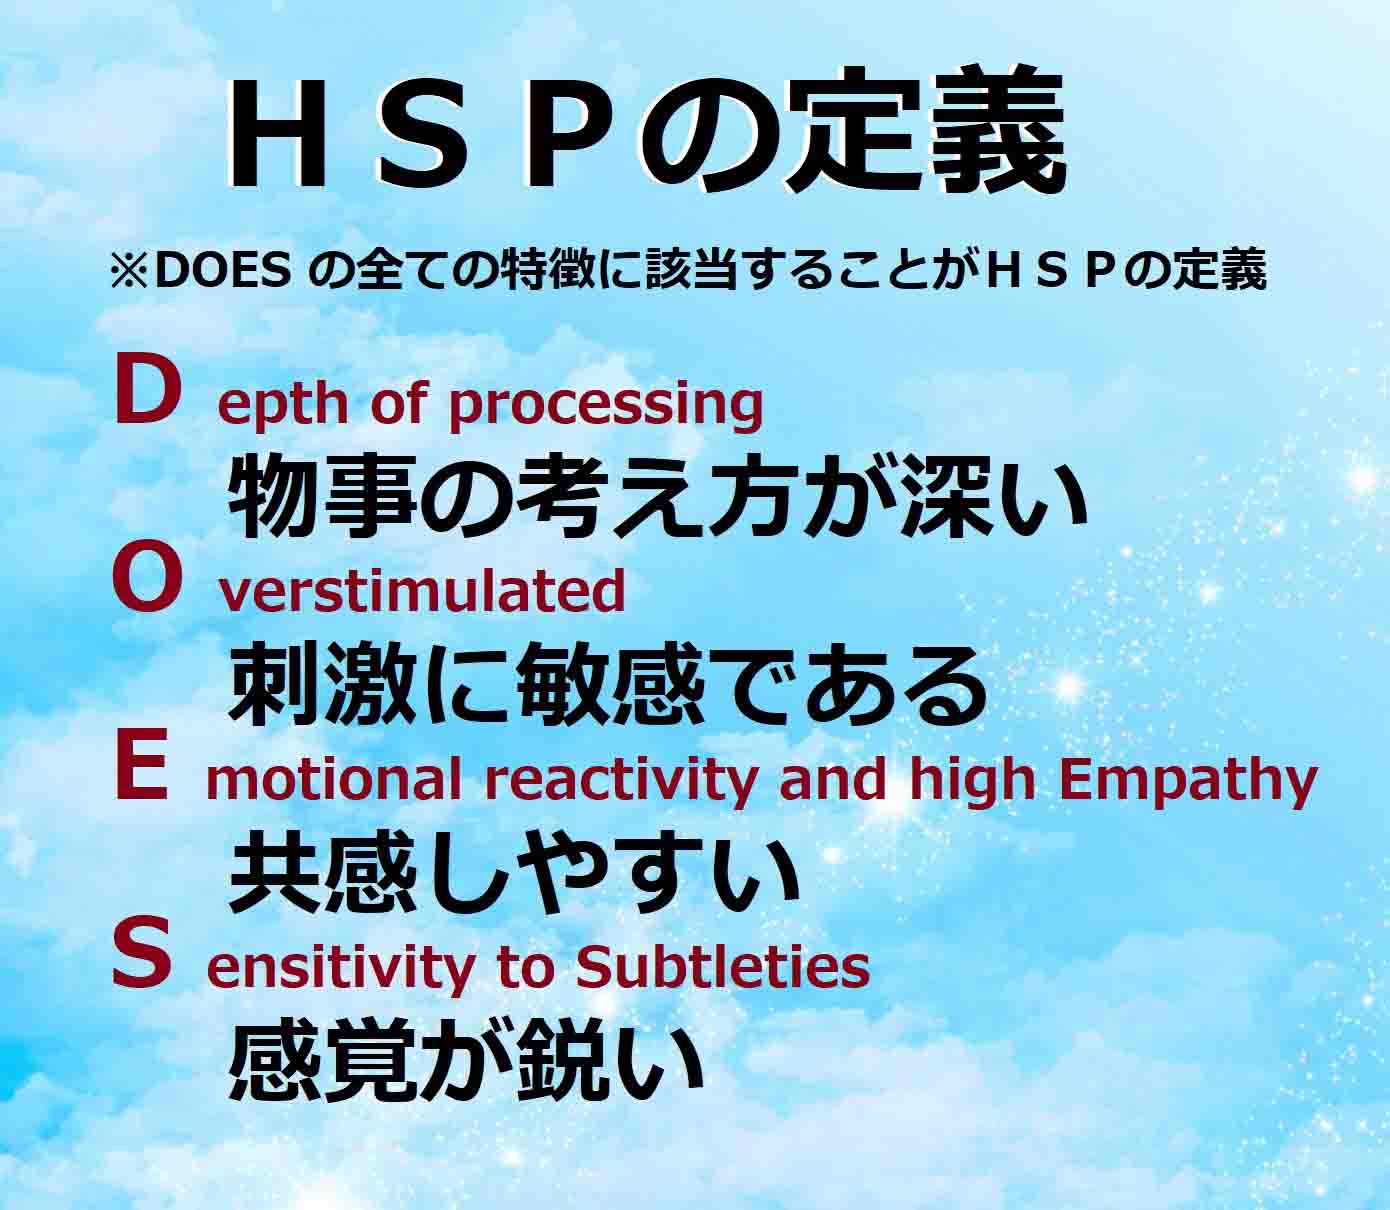 HSPの定義（DOESのすべての特徴に該当することがHSPの定義）